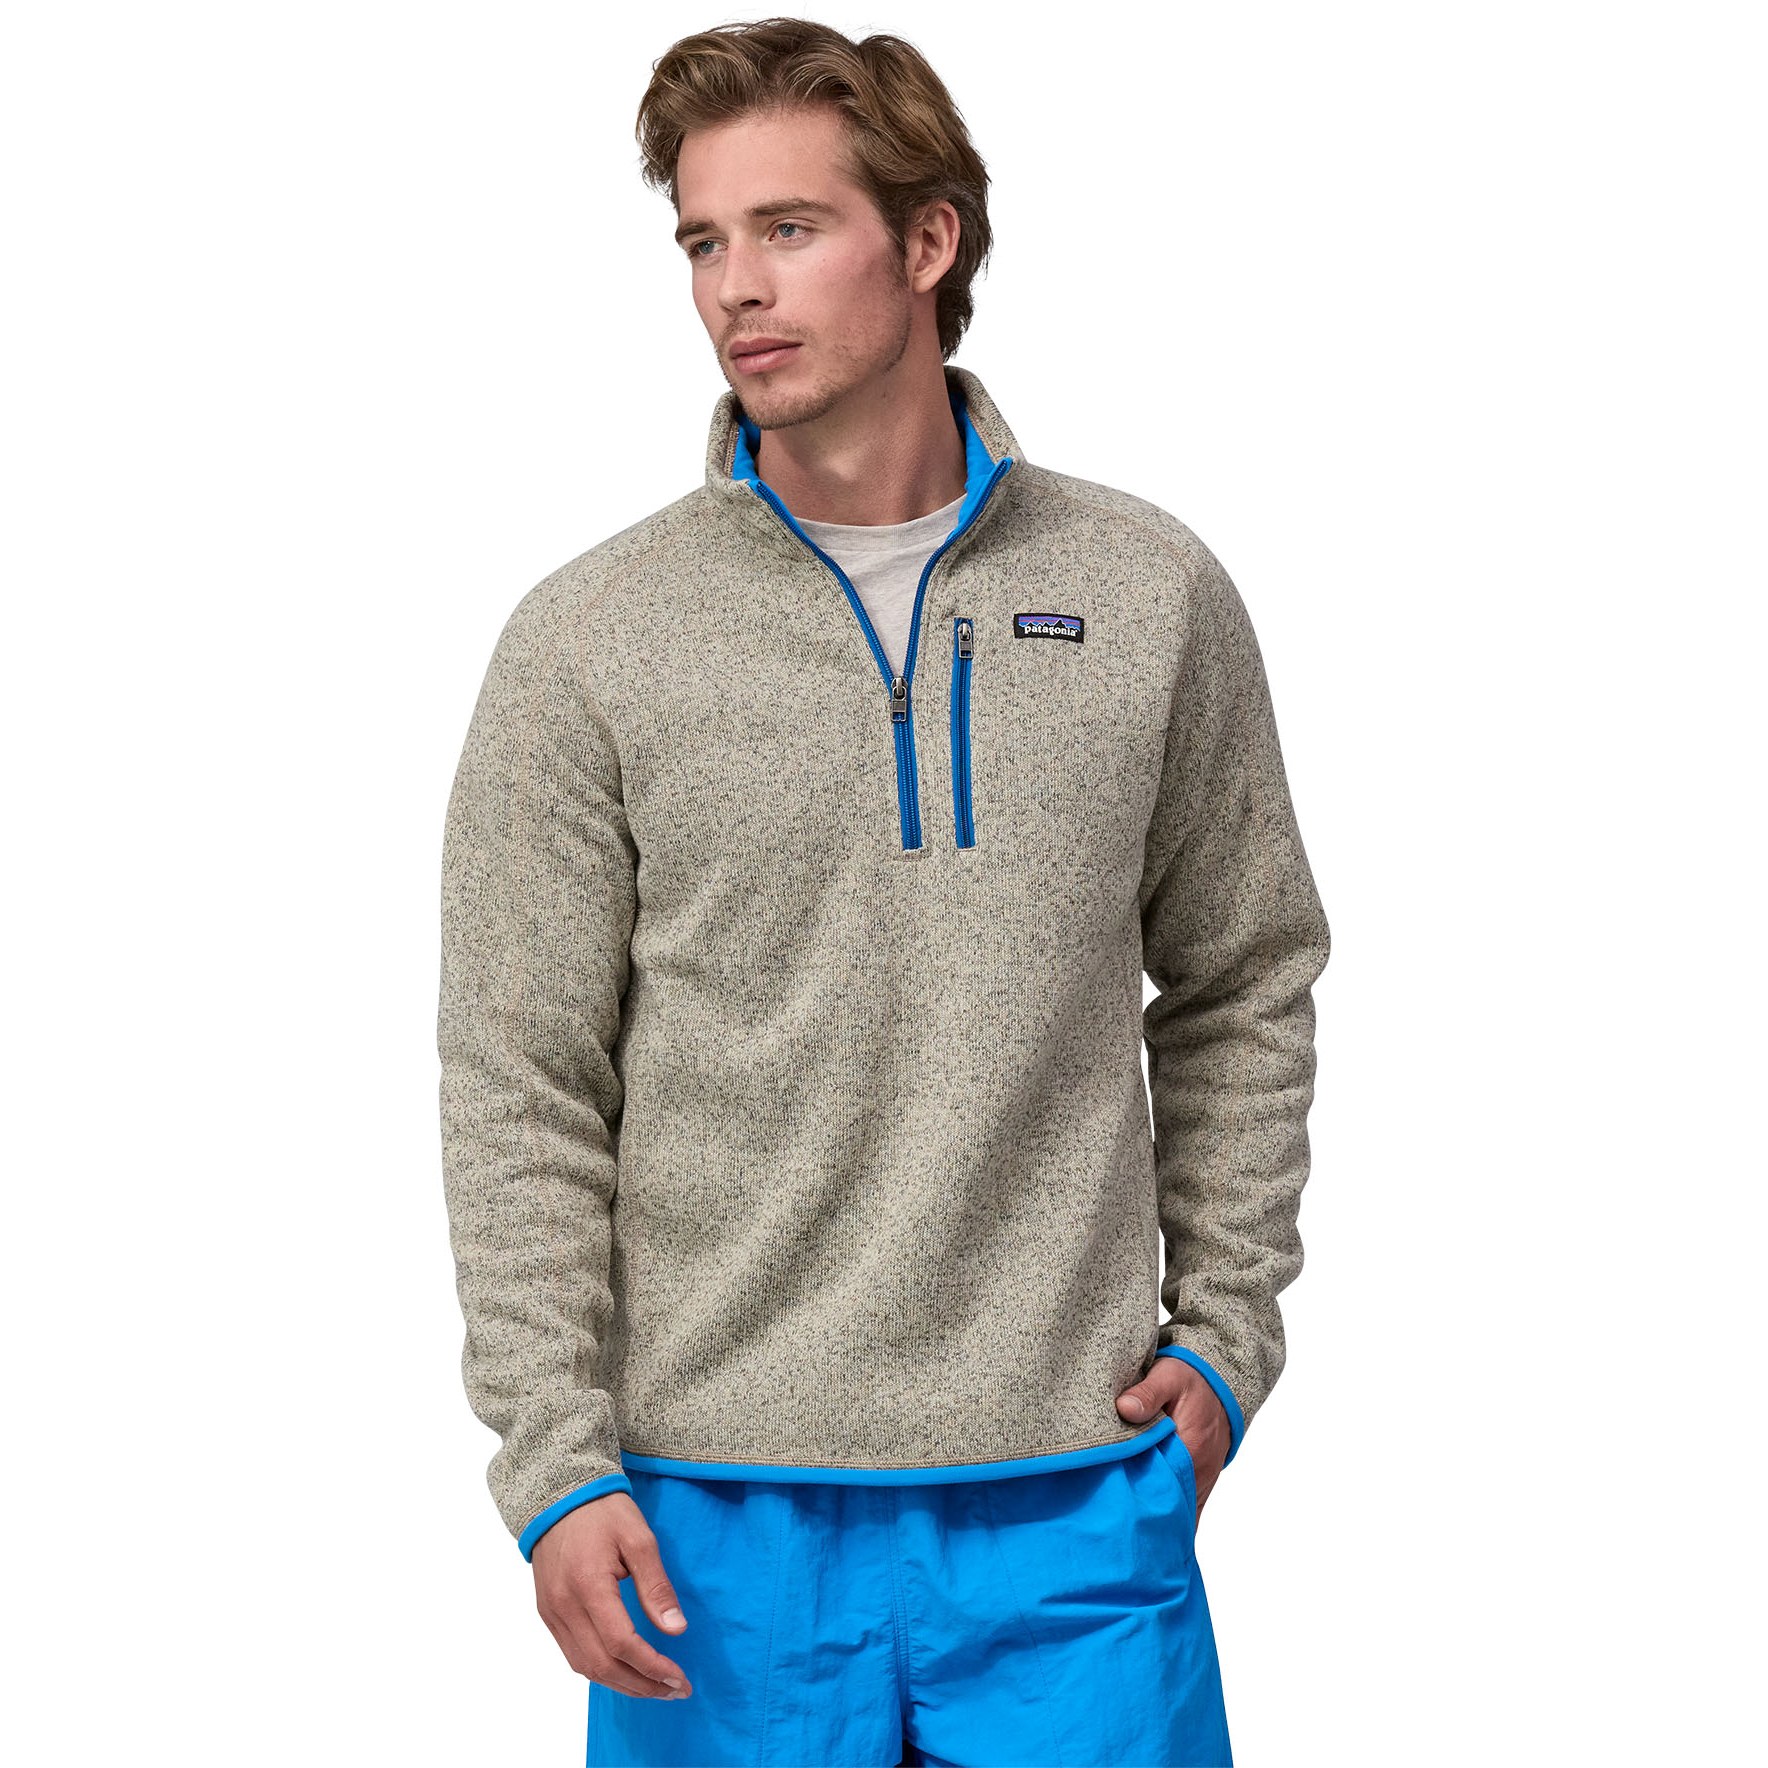 Produktbild von Patagonia Better Sweater 1/4-Zip Fleecepullover Herren - Oar Tan w/Vessel Blue